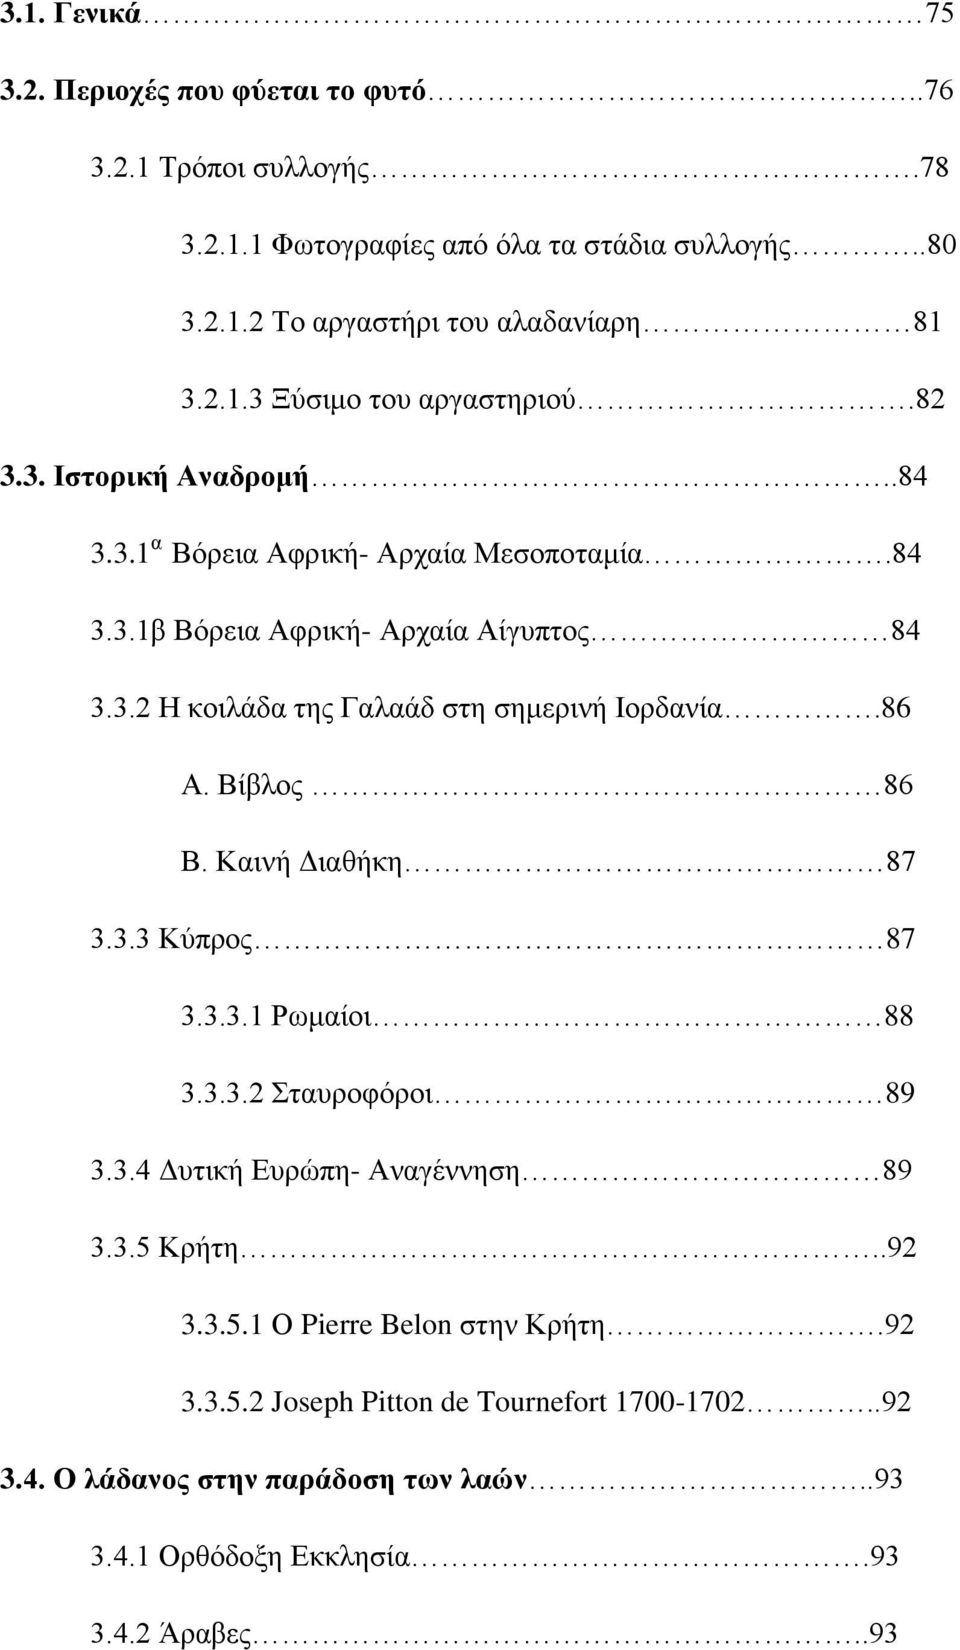 86 Α. Βίβλος 86 Β. Καινή Διαθήκη 87 3.3.3 Κύπρος 87 3.3.3.1 Ρωμαίοι 88 3.3.3.2 Σταυροφόροι 89 3.3.4 Δυτική Ευρώπη- Αναγέννηση 89 3.3.5 Κρήτη..92 3.3.5.1 Ο Pierre Belon στην Κρήτη.